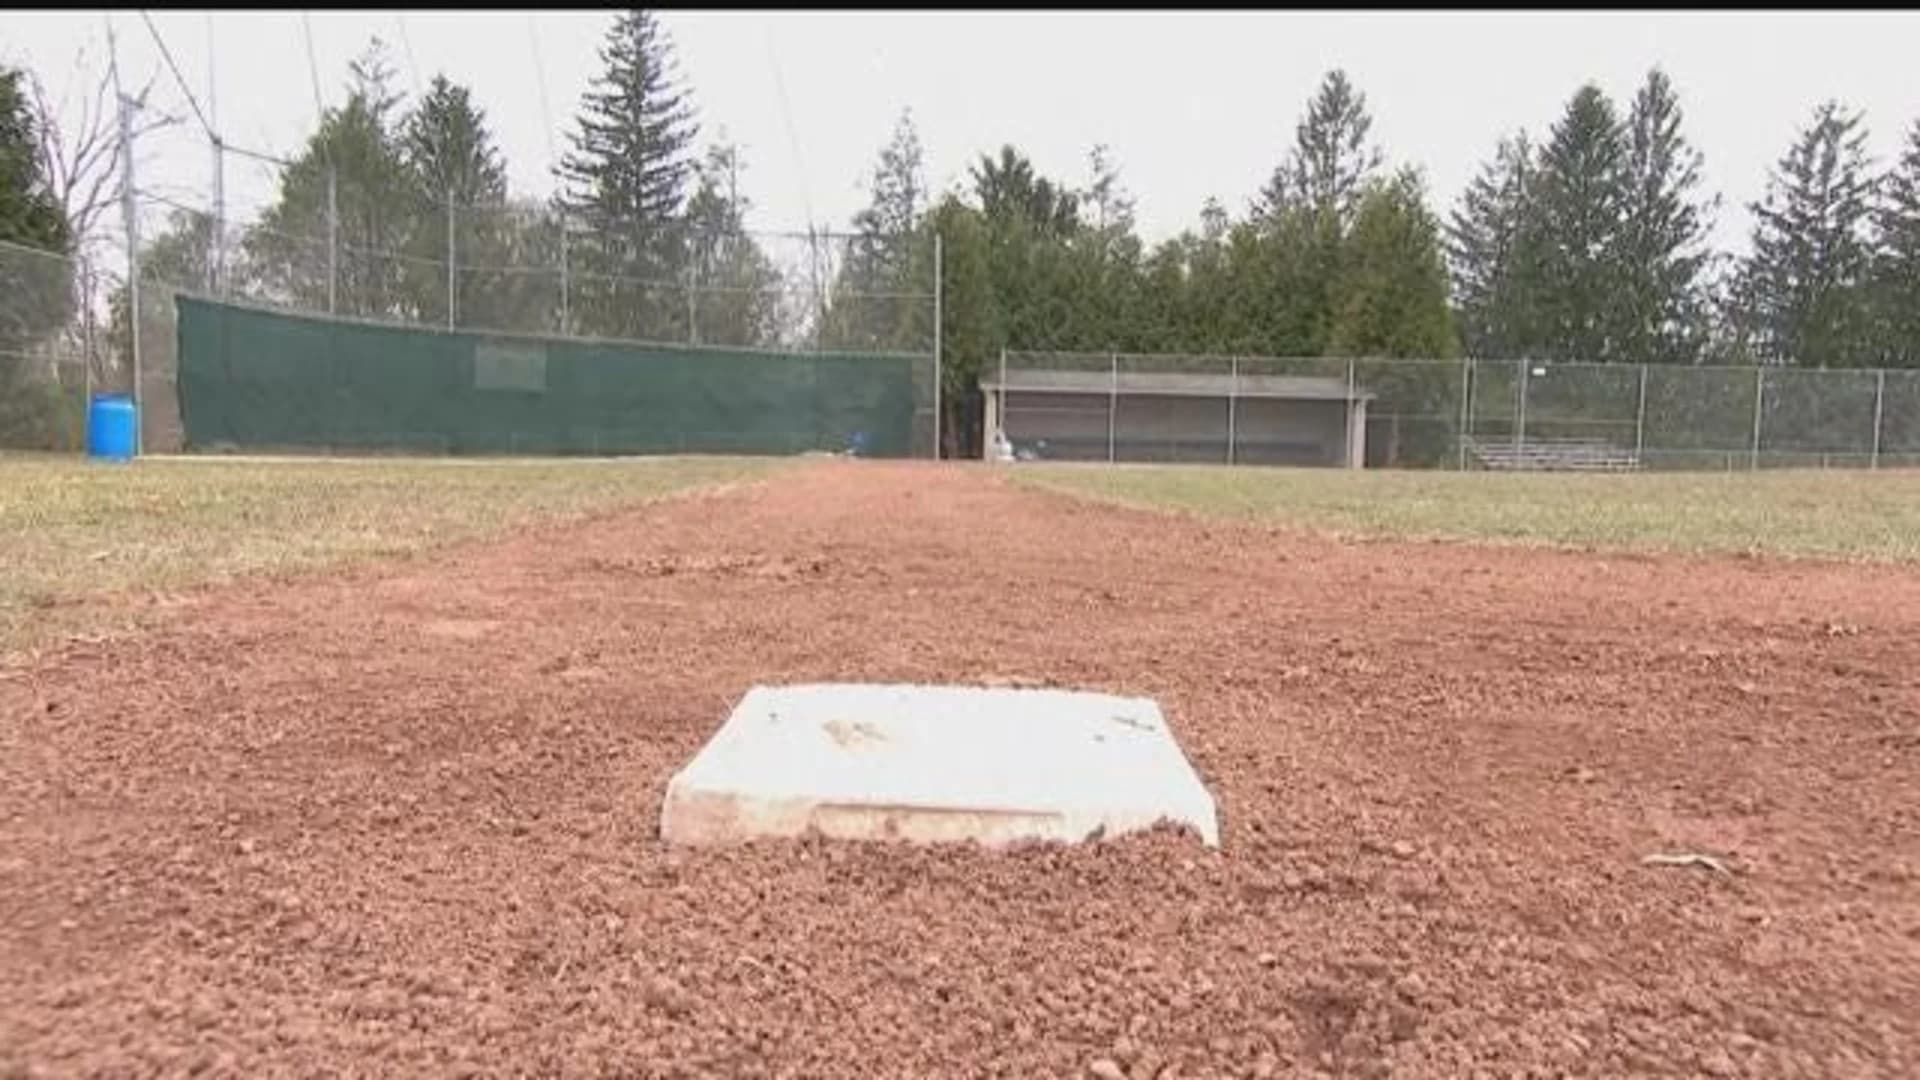 Weston baseball field undergoing maintenance repairs ahead of home opener